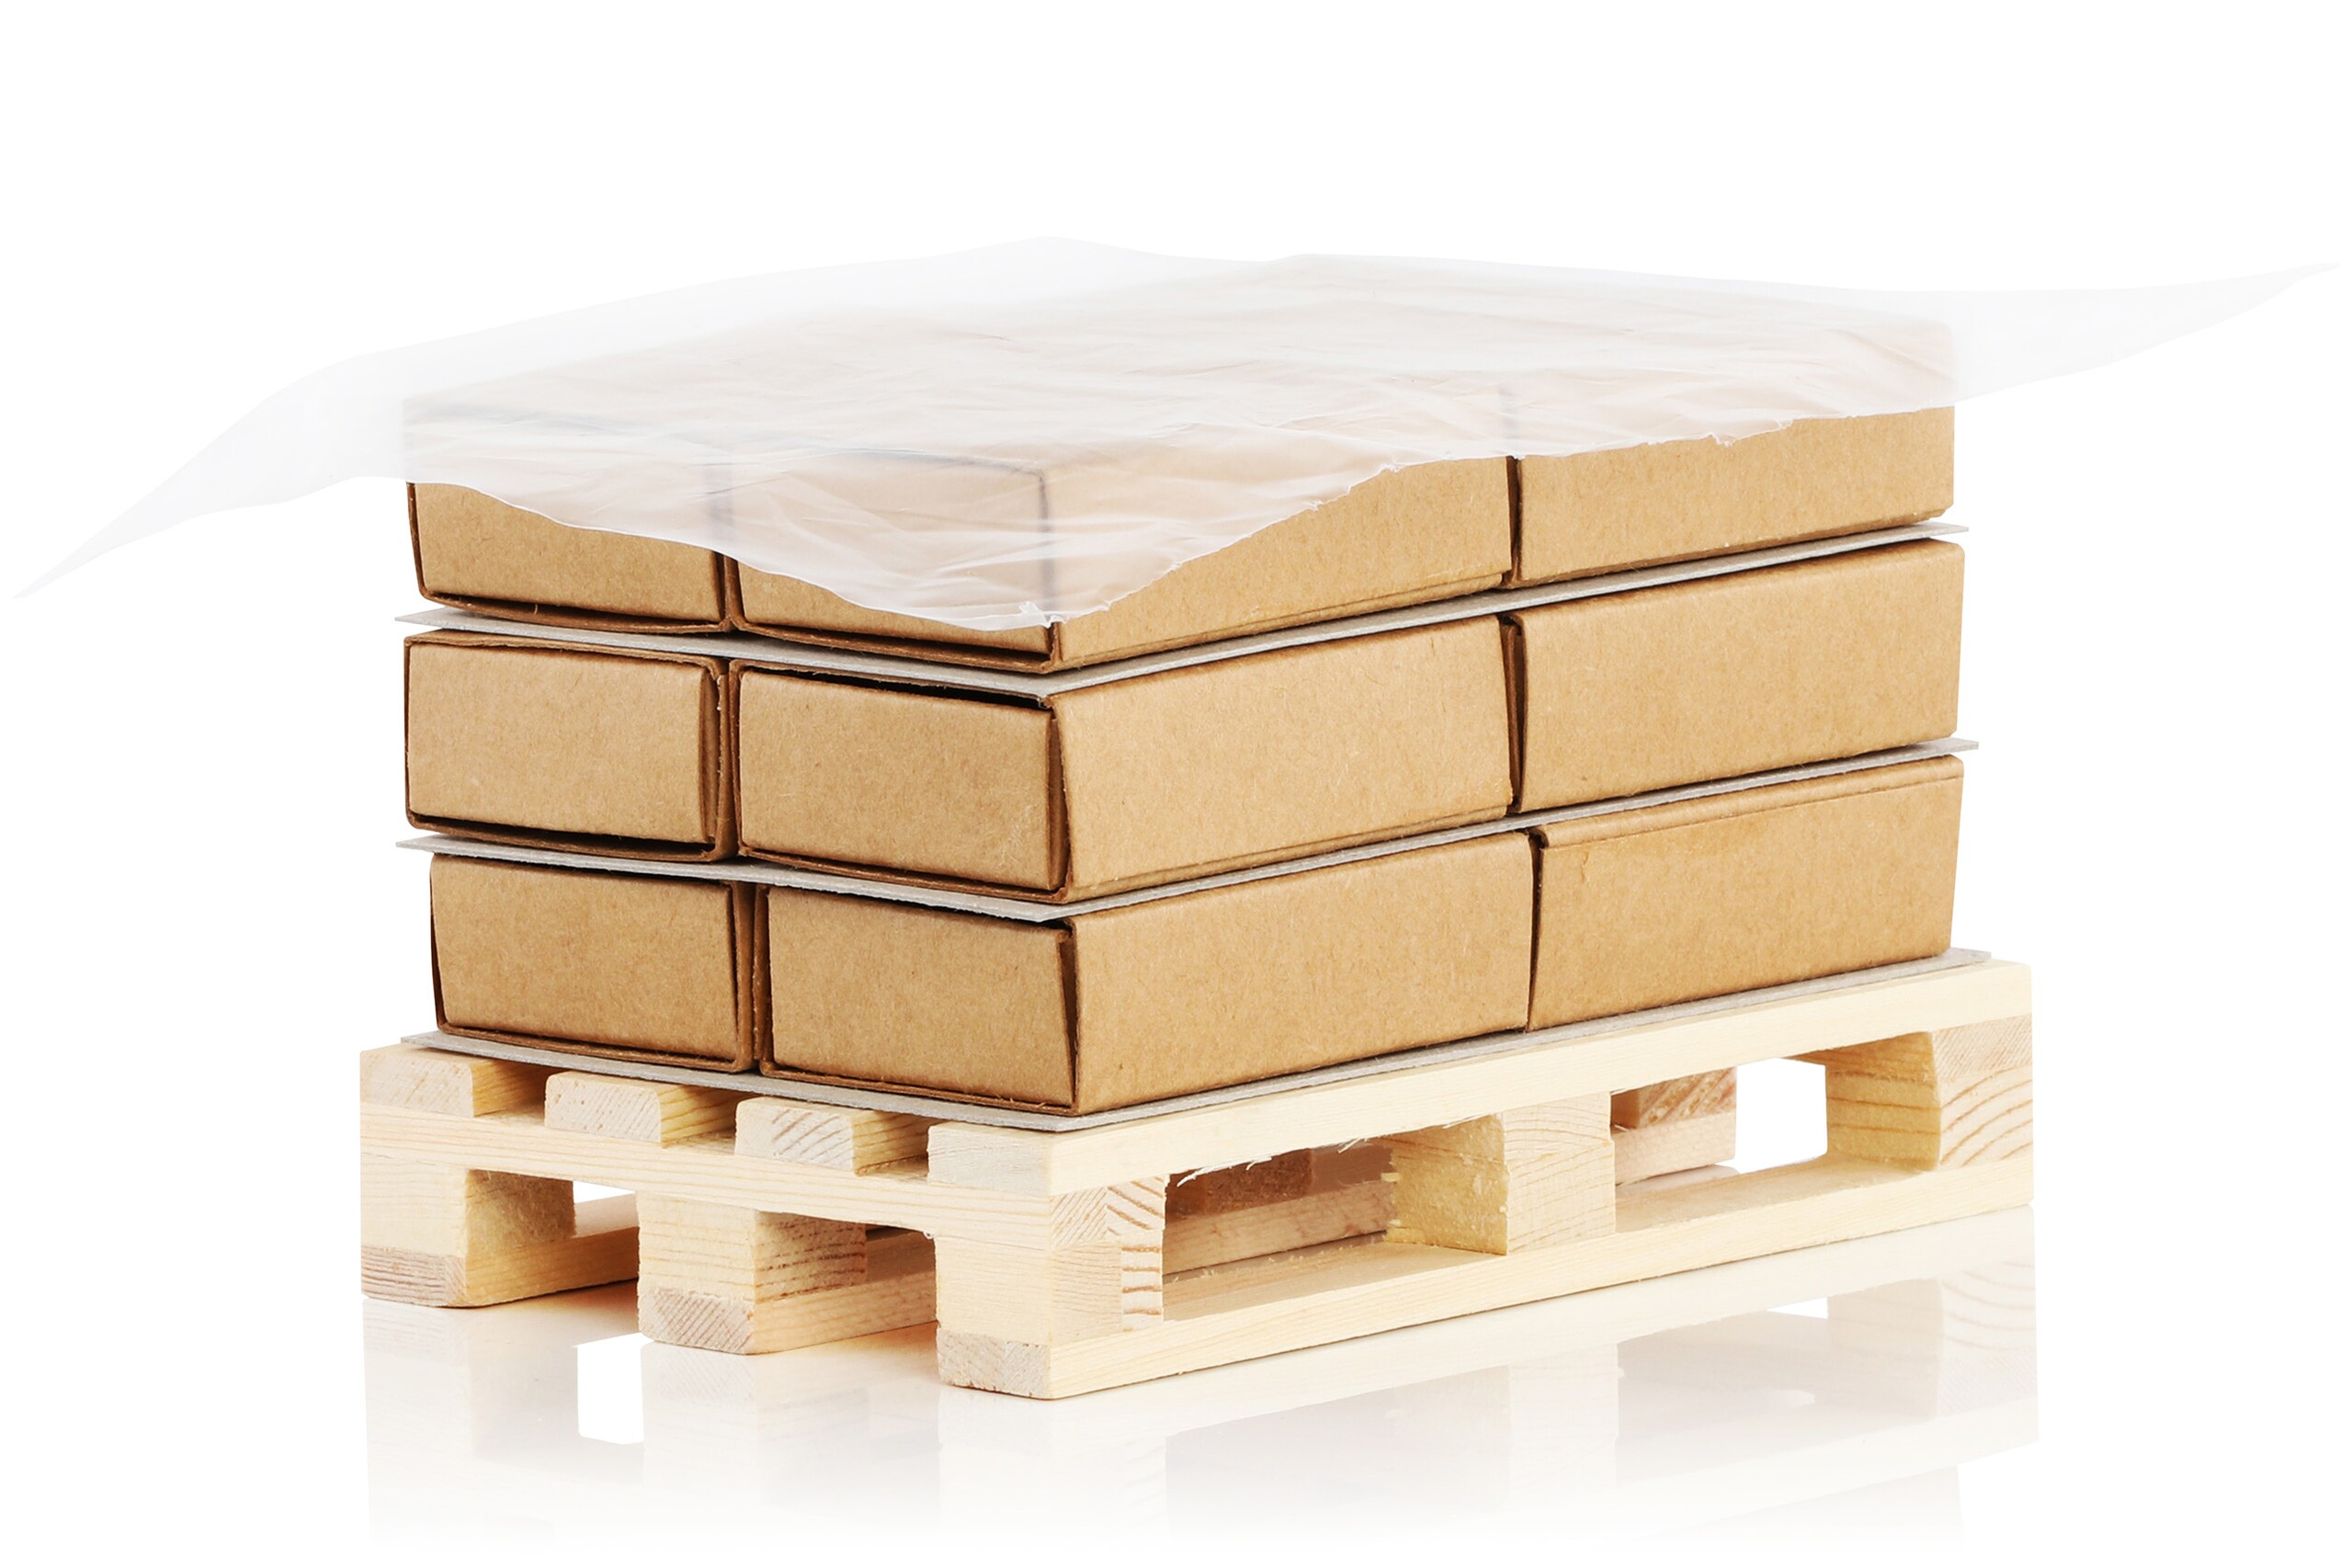 Trois rangées de boîtes en carton empilées sur une palette, recouvertes d'une feuille de couverture.